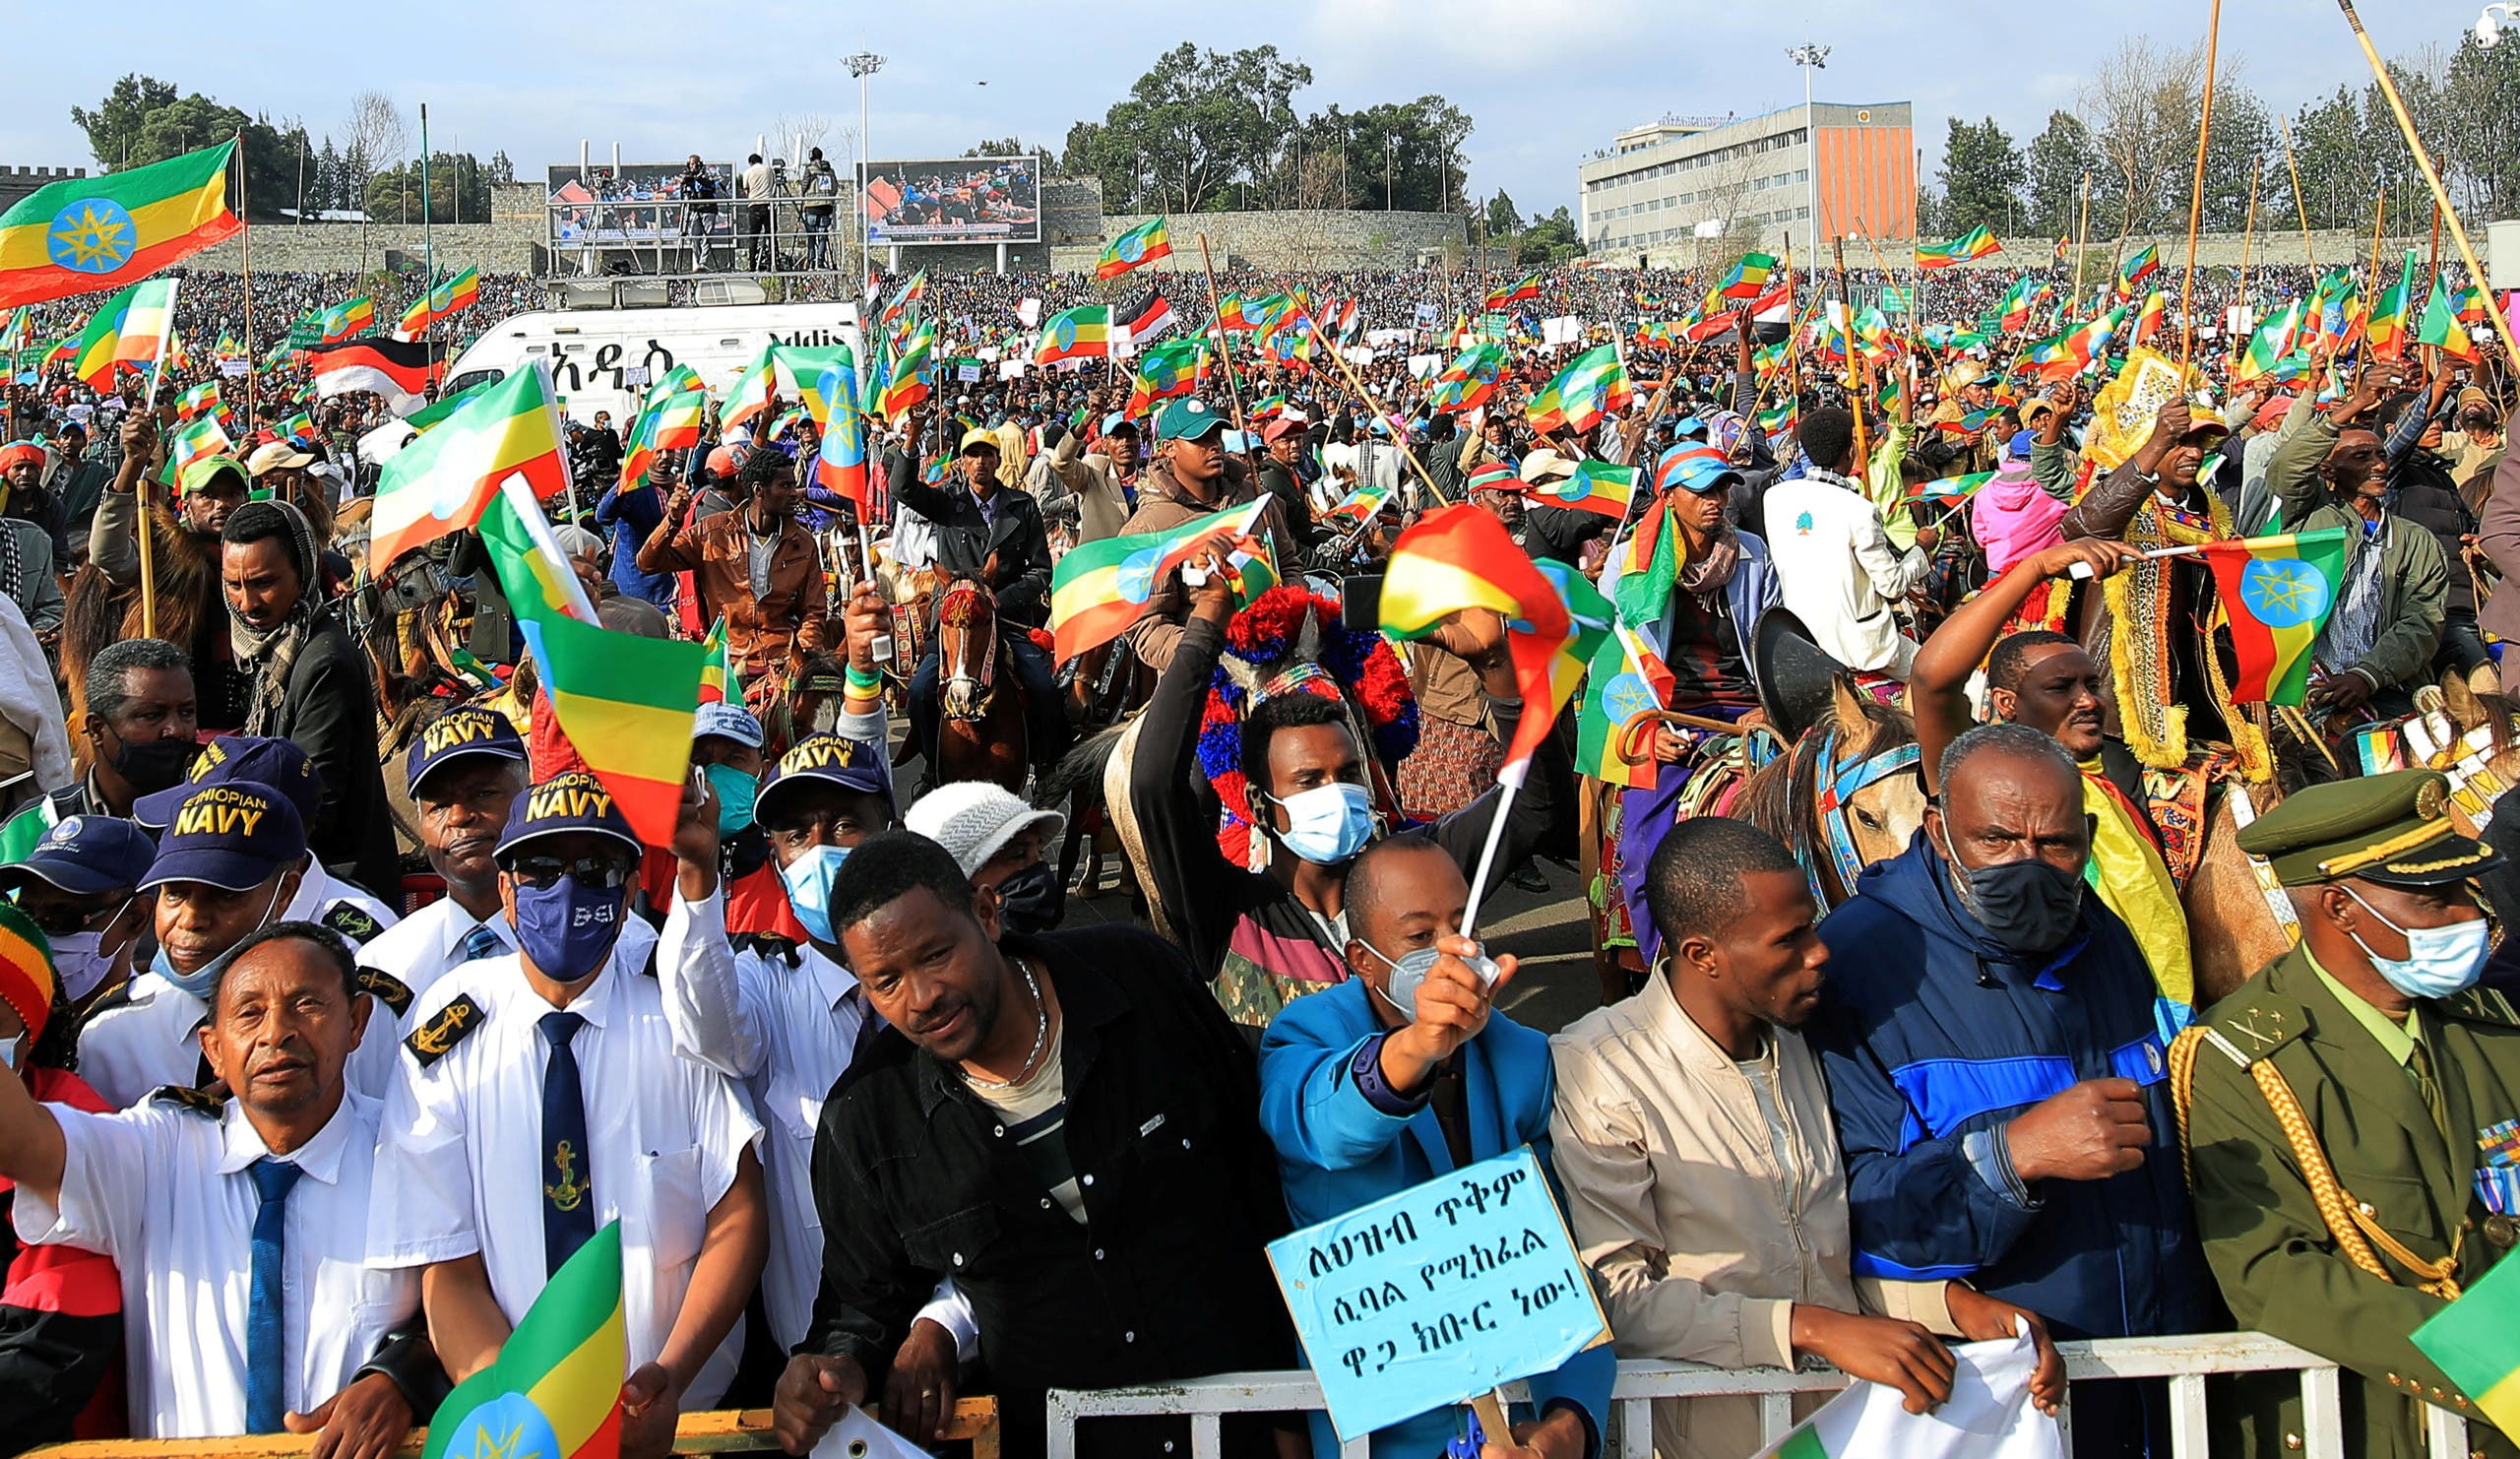 وسط احتدام المعارك الدامية.. تحذير من أخطار حرب أهلية طاحنة في إثيوبيا وجهود أفريقية لإيجاد حل سلمي للأزمة قبل الكارثة